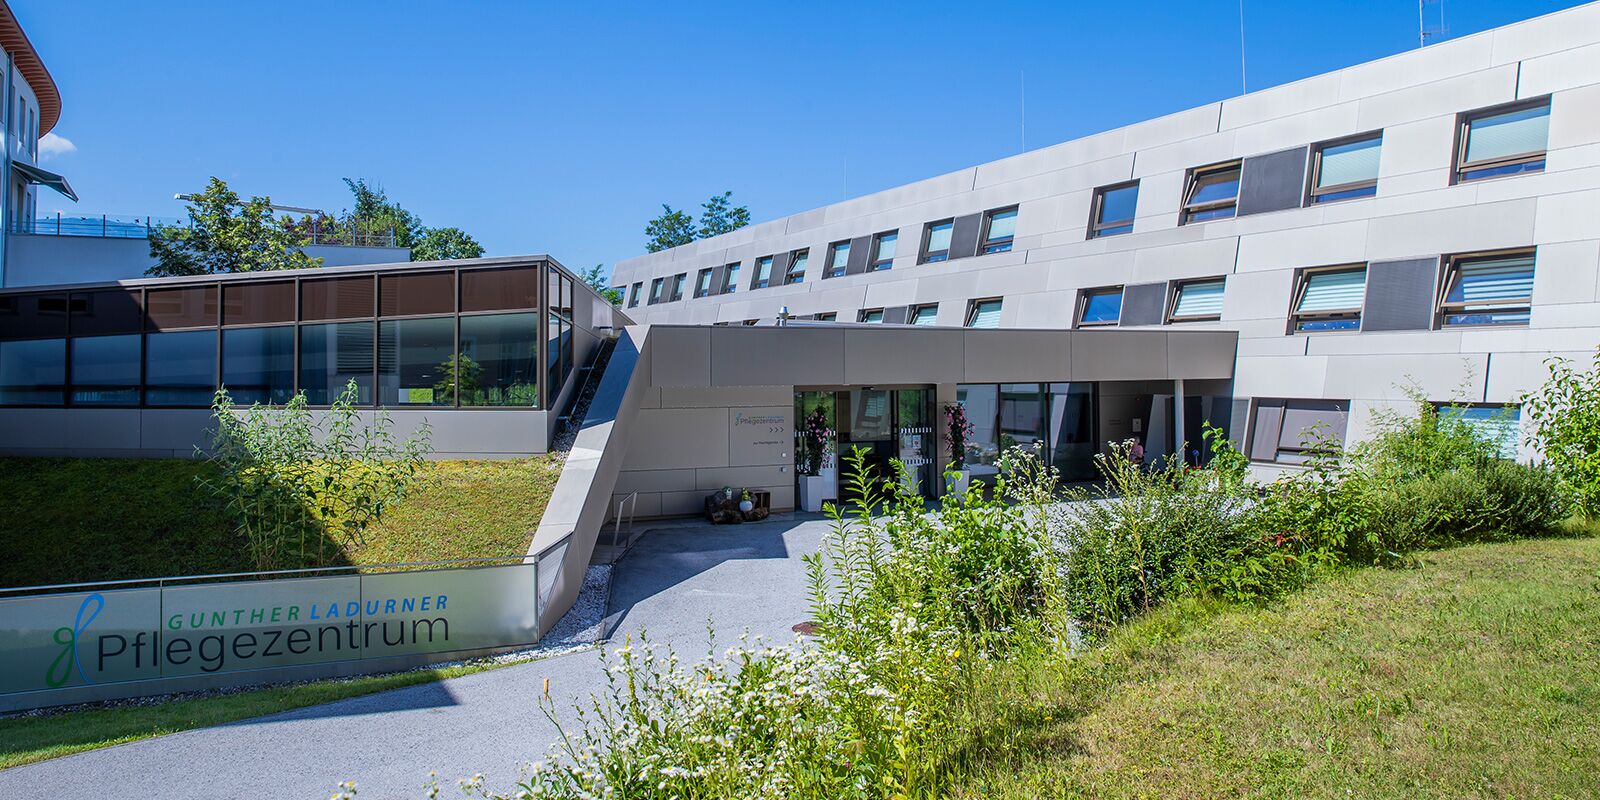 Gunther Ladurner Pflegezentrum - Haupteingang